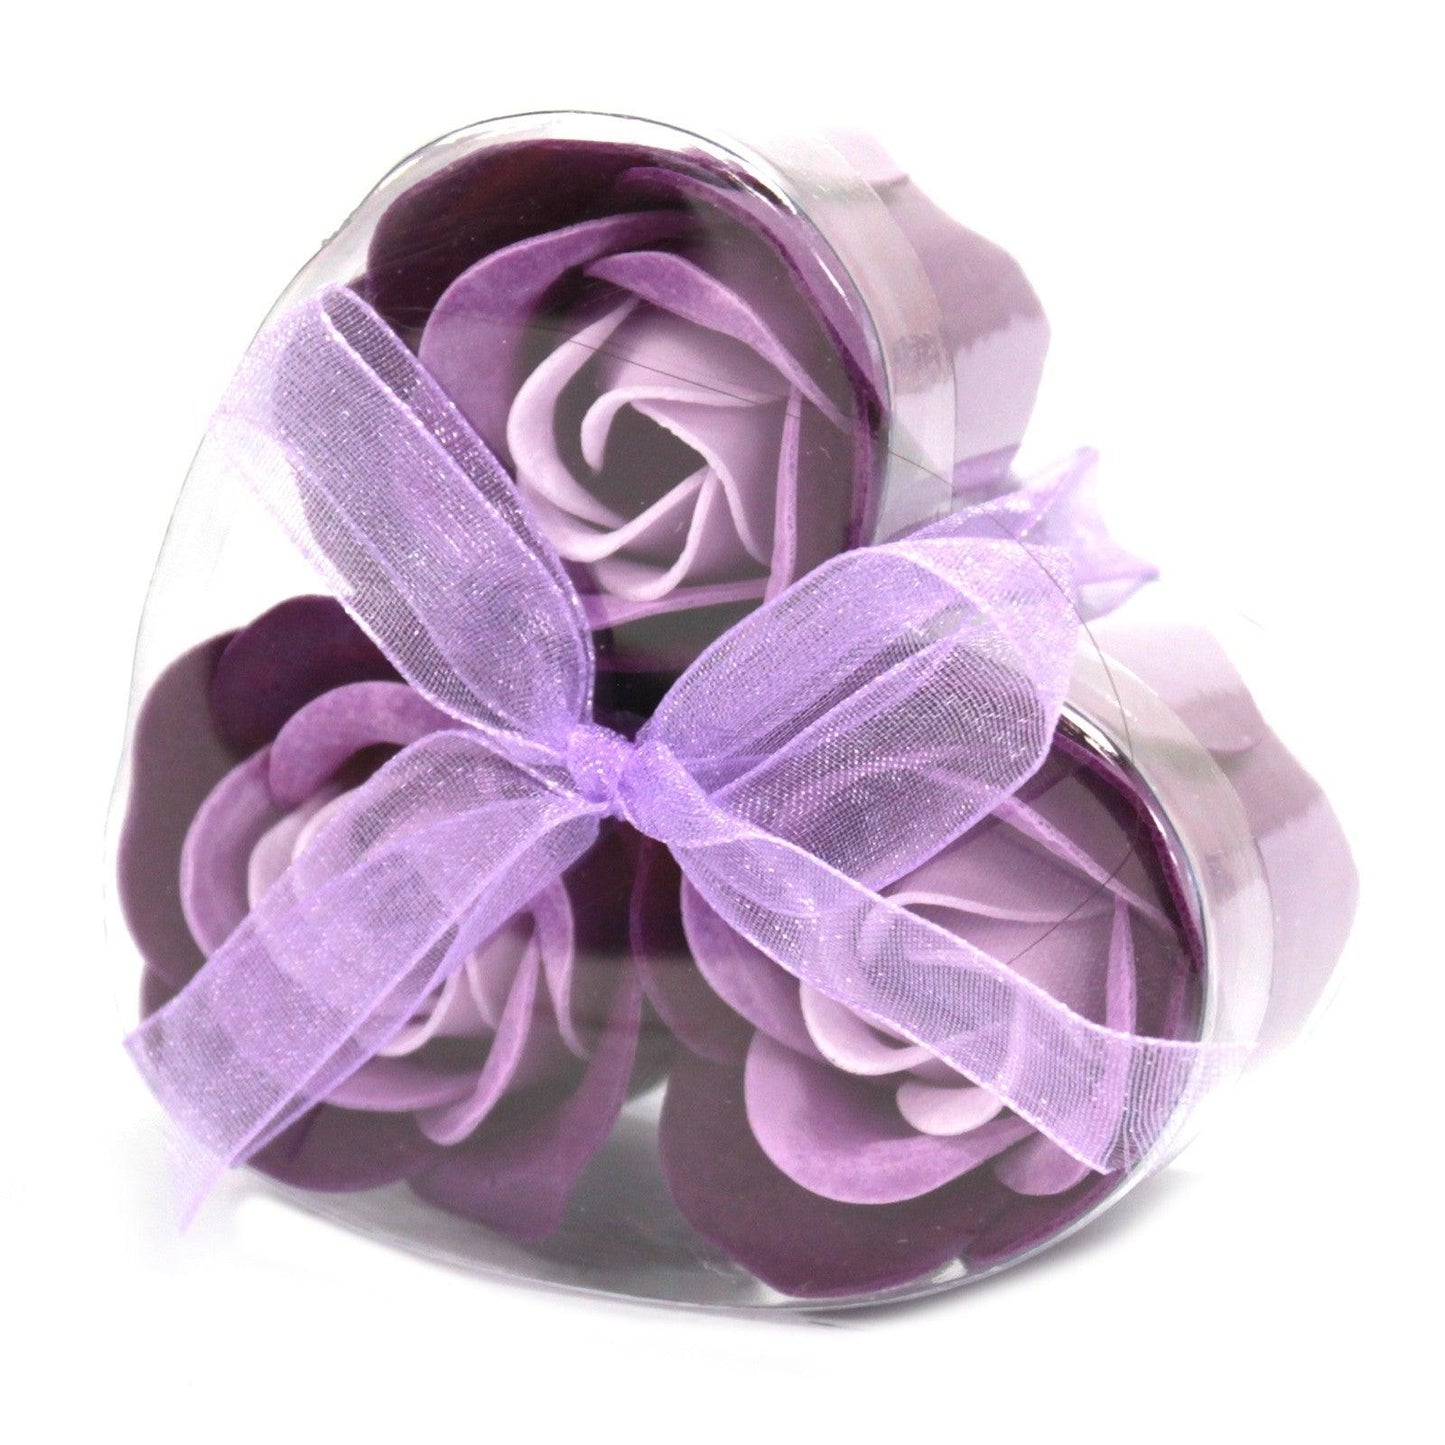 Set of 3 Soap Flower Heart Box - Lavender Roses - DuvetDay.co.uk